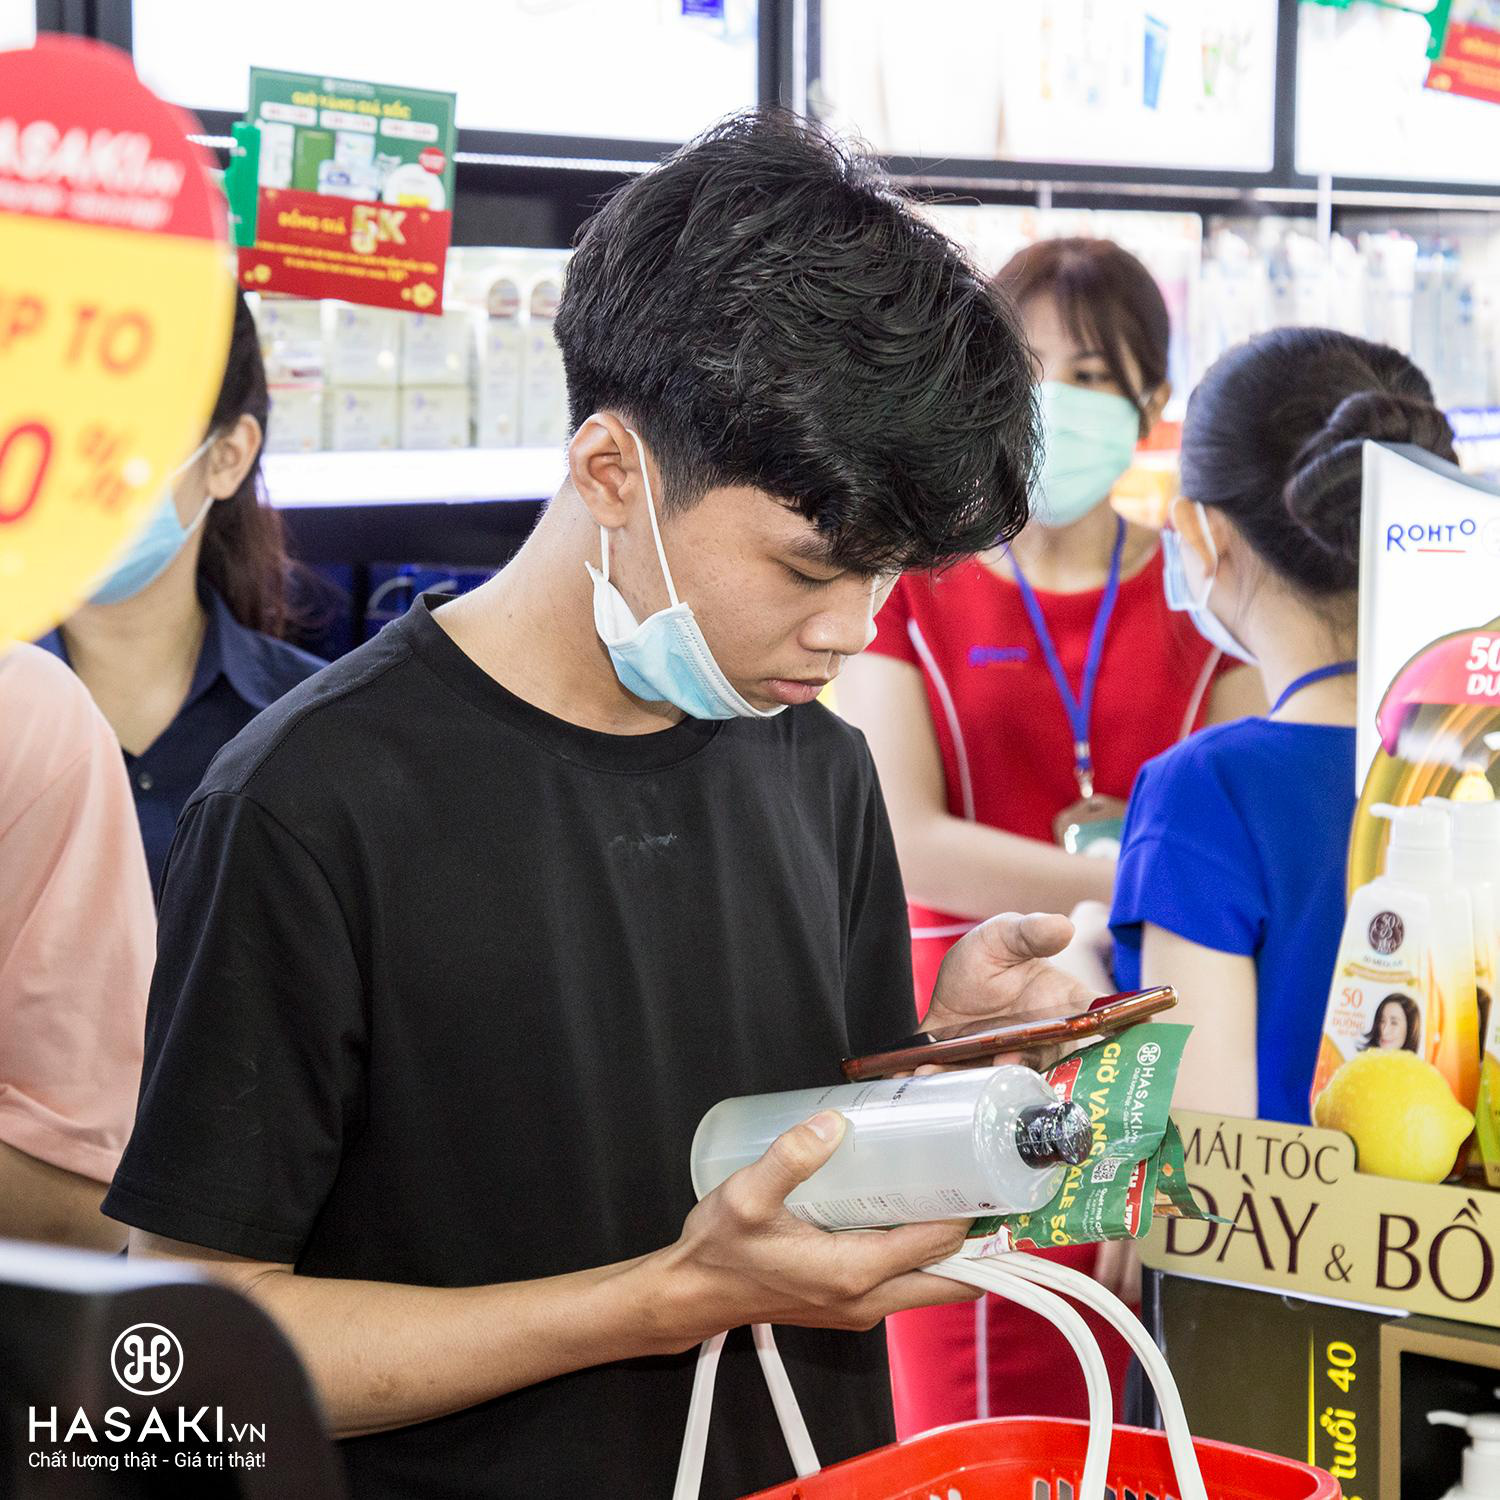 Hàng ngàn tín đồ làm đẹp hào hứng với không gian mua sắm xịn sò, cái gì cũng có ở Hasaki chi nhánh 15 - Ảnh 6.